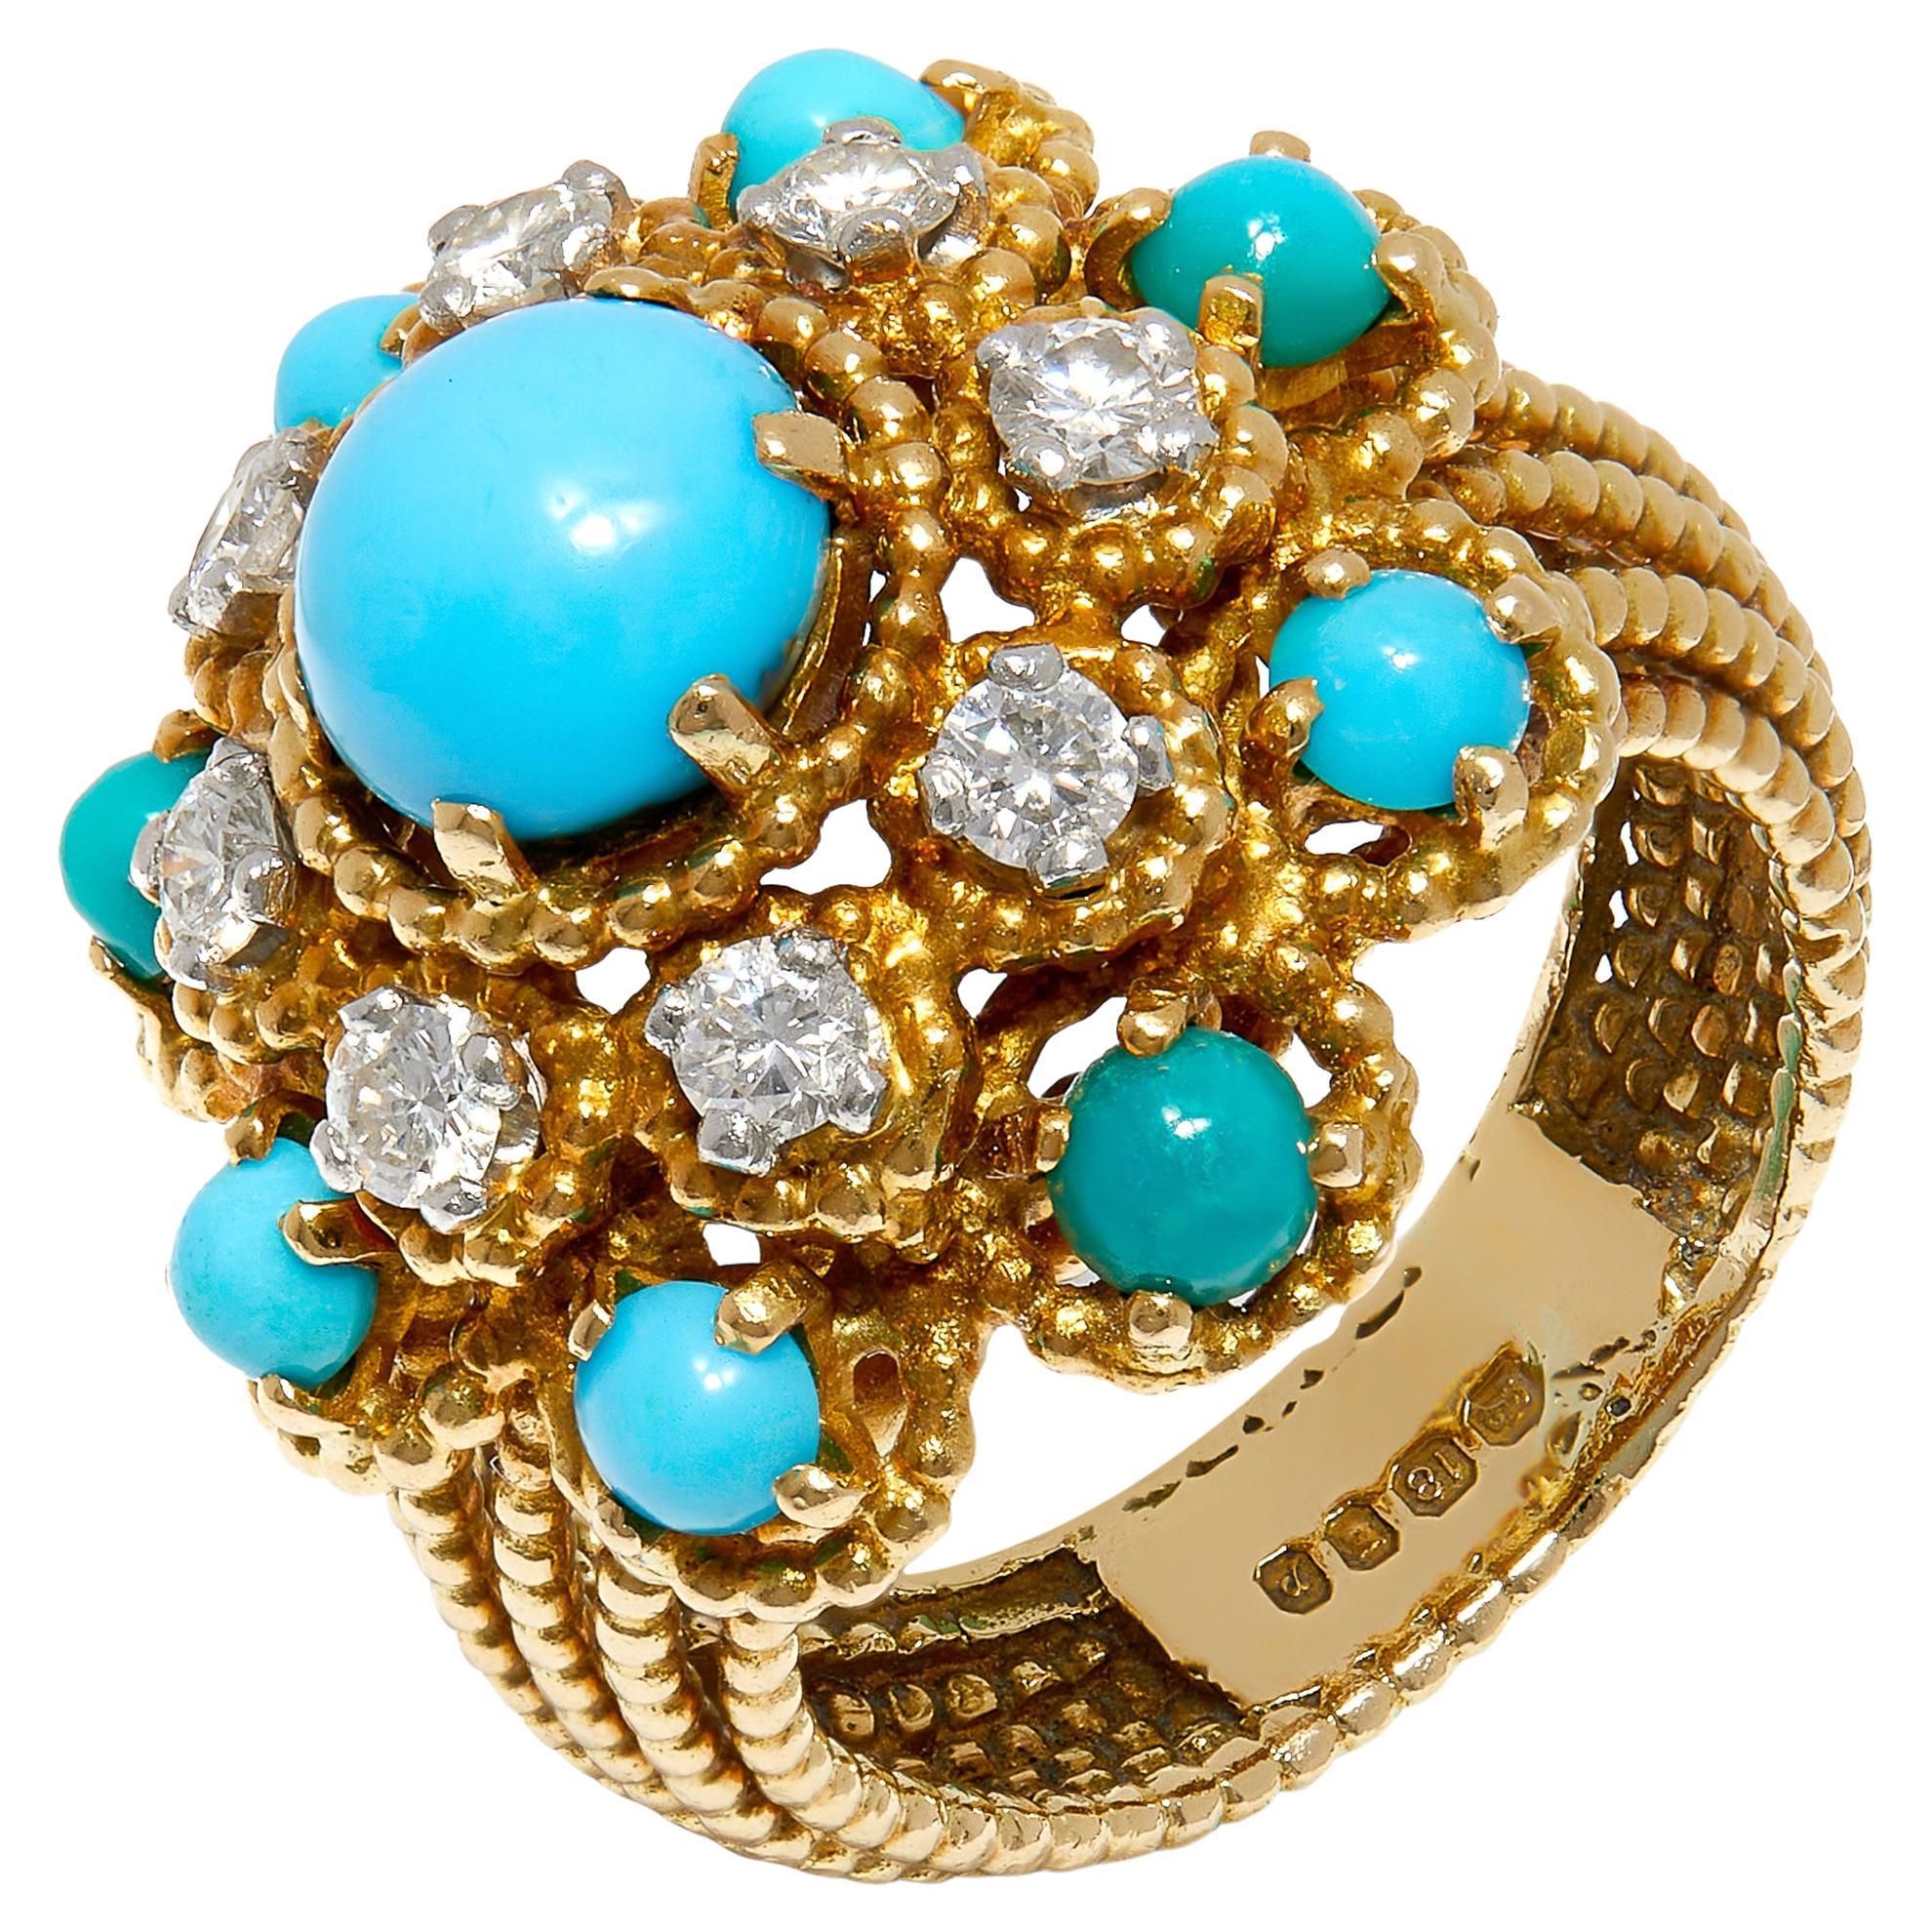 Vintage 1970s Gold Bombé Dress Ring with Turquoise and Diamonds (bague de robe en or bombé avec turquoise et diamants) en vente